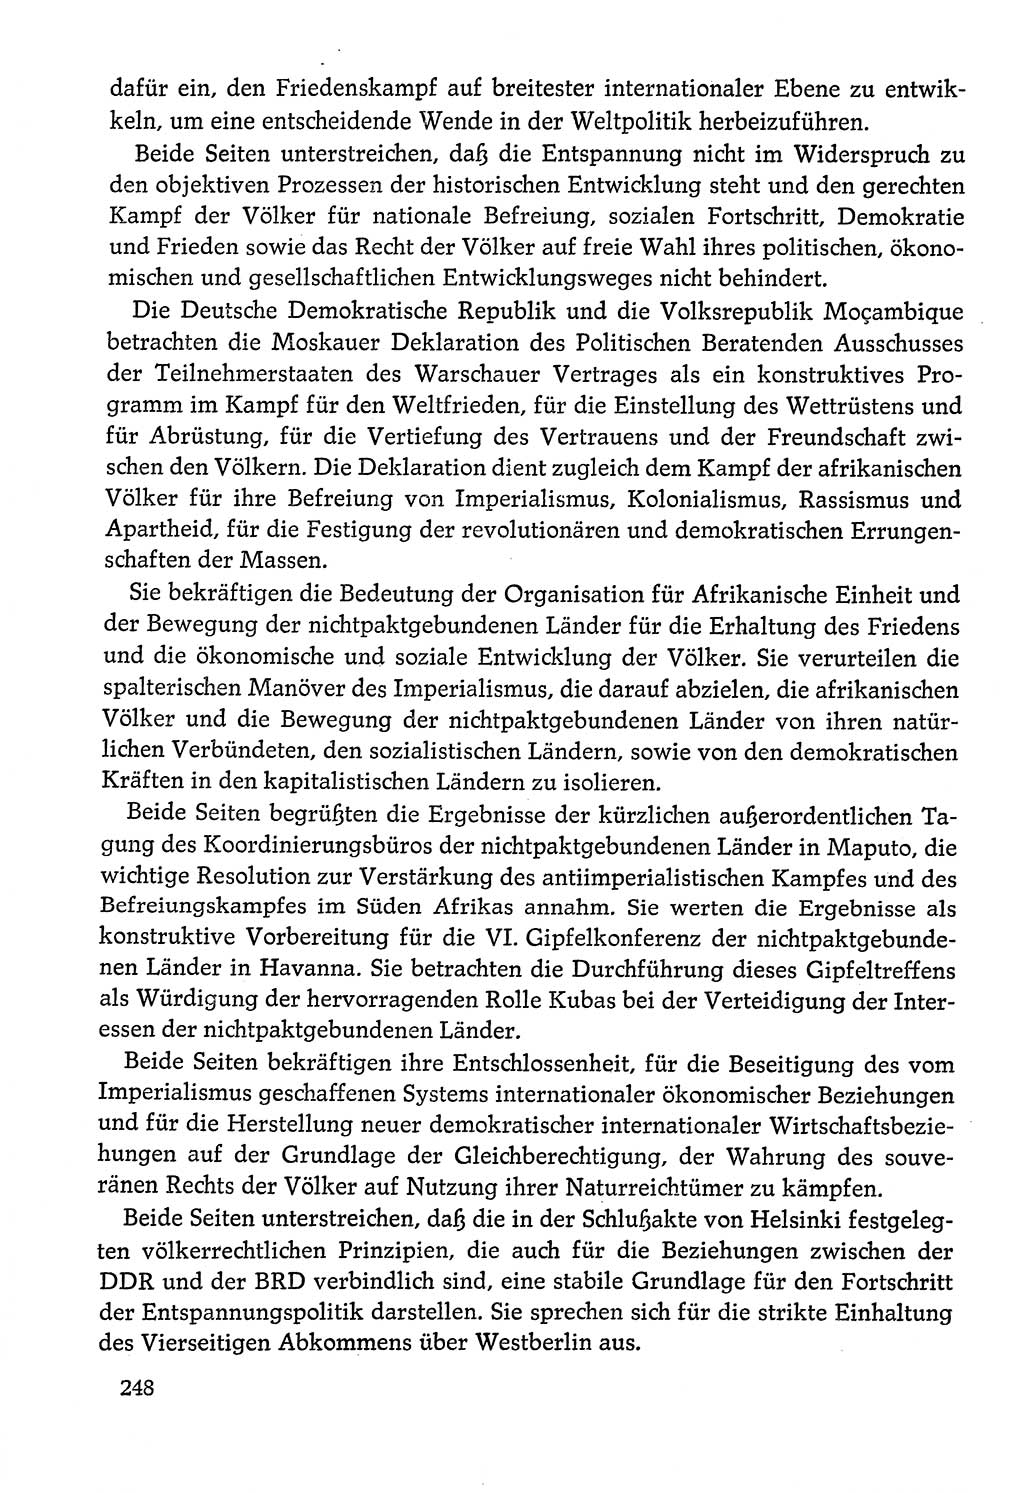 Dokumente der Sozialistischen Einheitspartei Deutschlands (SED) [Deutsche Demokratische Republik (DDR)] 1978-1979, Seite 248 (Dok. SED DDR 1978-1979, S. 248)